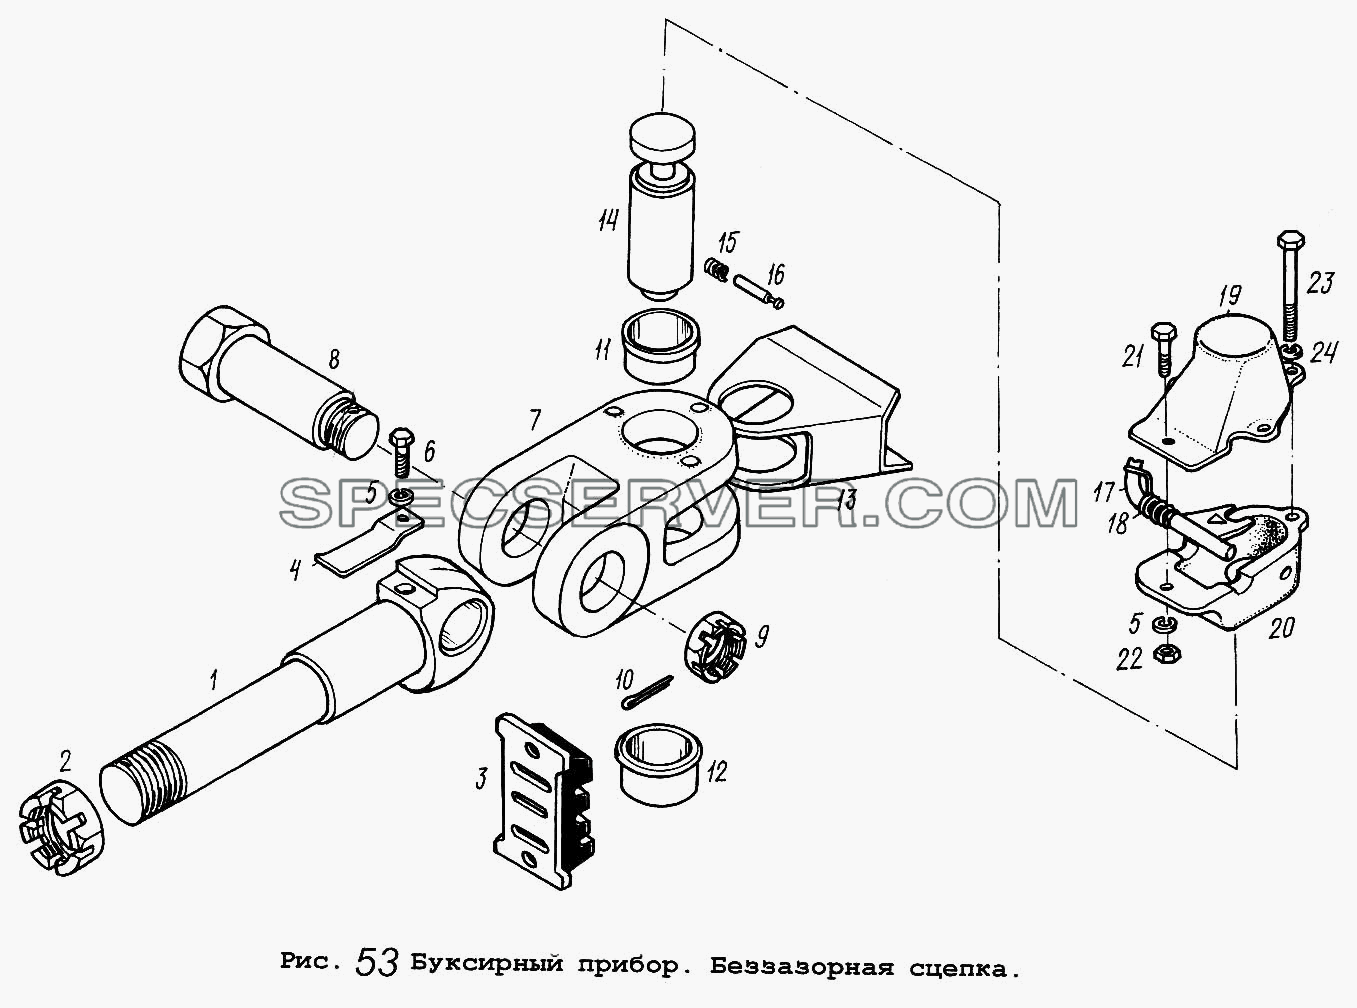 Буксирный прибор. Беззазорная сцепка для МАЗ-54323 (список запасных частей)